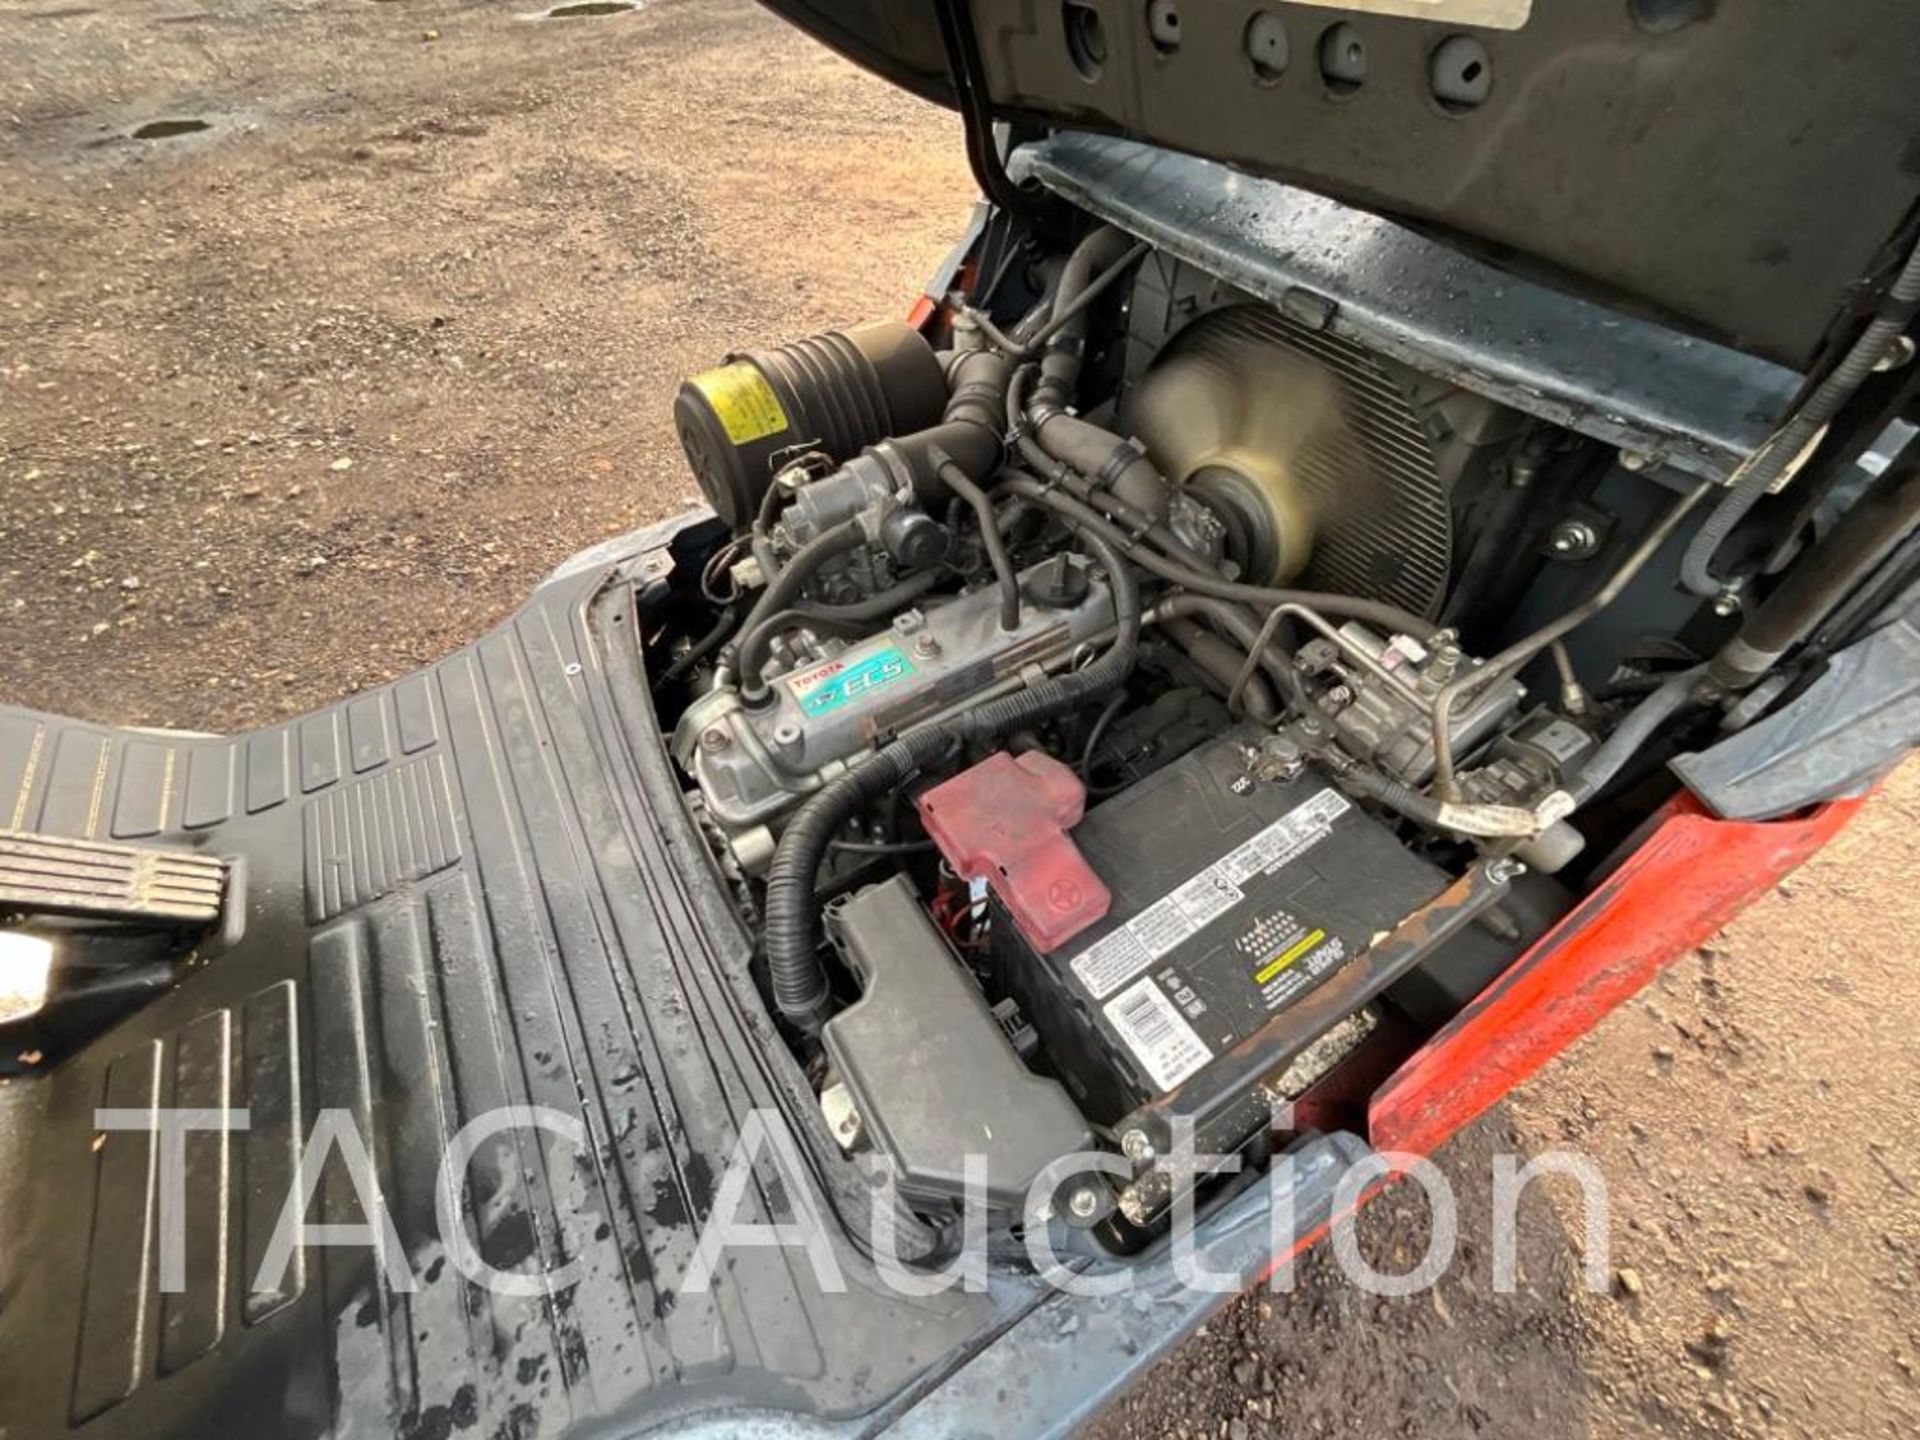 2018 Toyota 8FGCU30 6000lb Forklift - Image 14 of 17